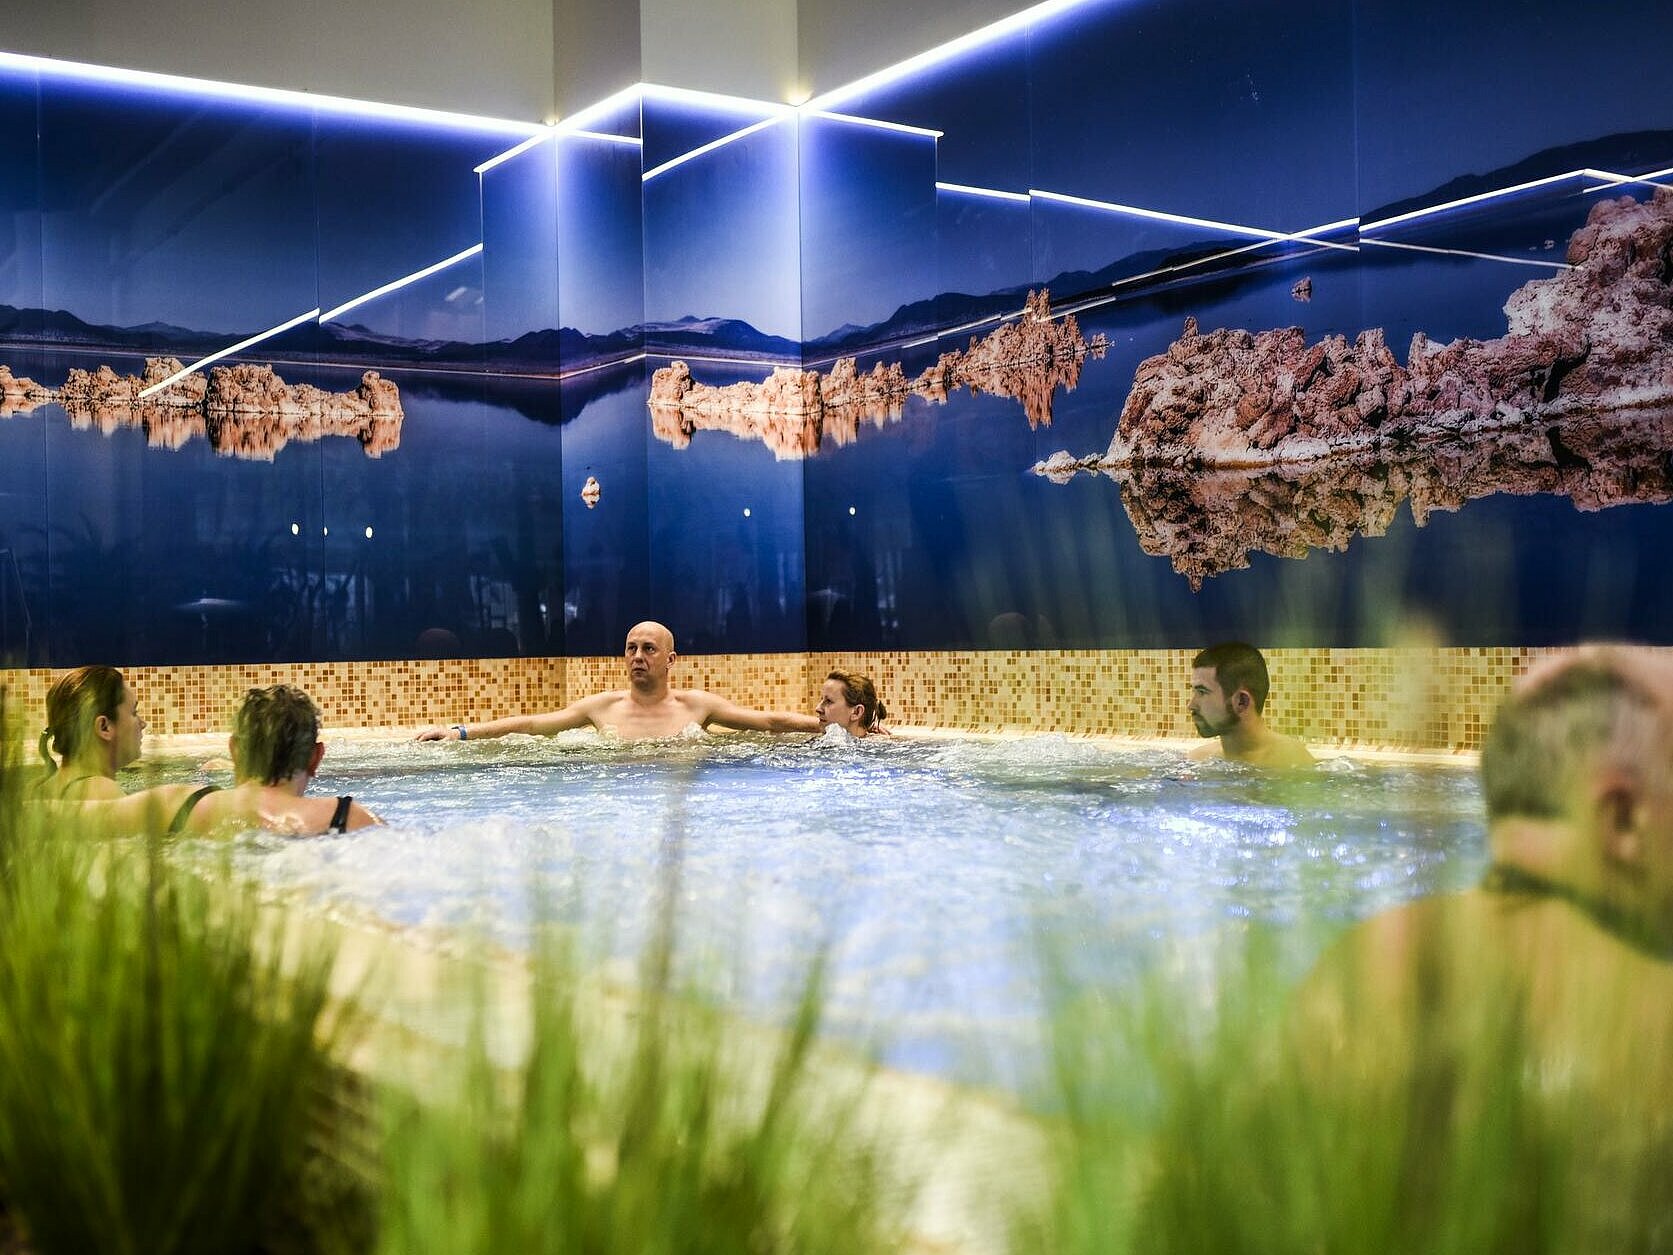 Аквапарк FALA , Basen solankowy, na pierwszym planie zielona roślinność w donicach dookoła krawędzi basenu. W basenie kilka osób odwróconych od obiektywu, na ścianach dookoła basenu fototapeta za szkłem z widokiem Morza Martwego.